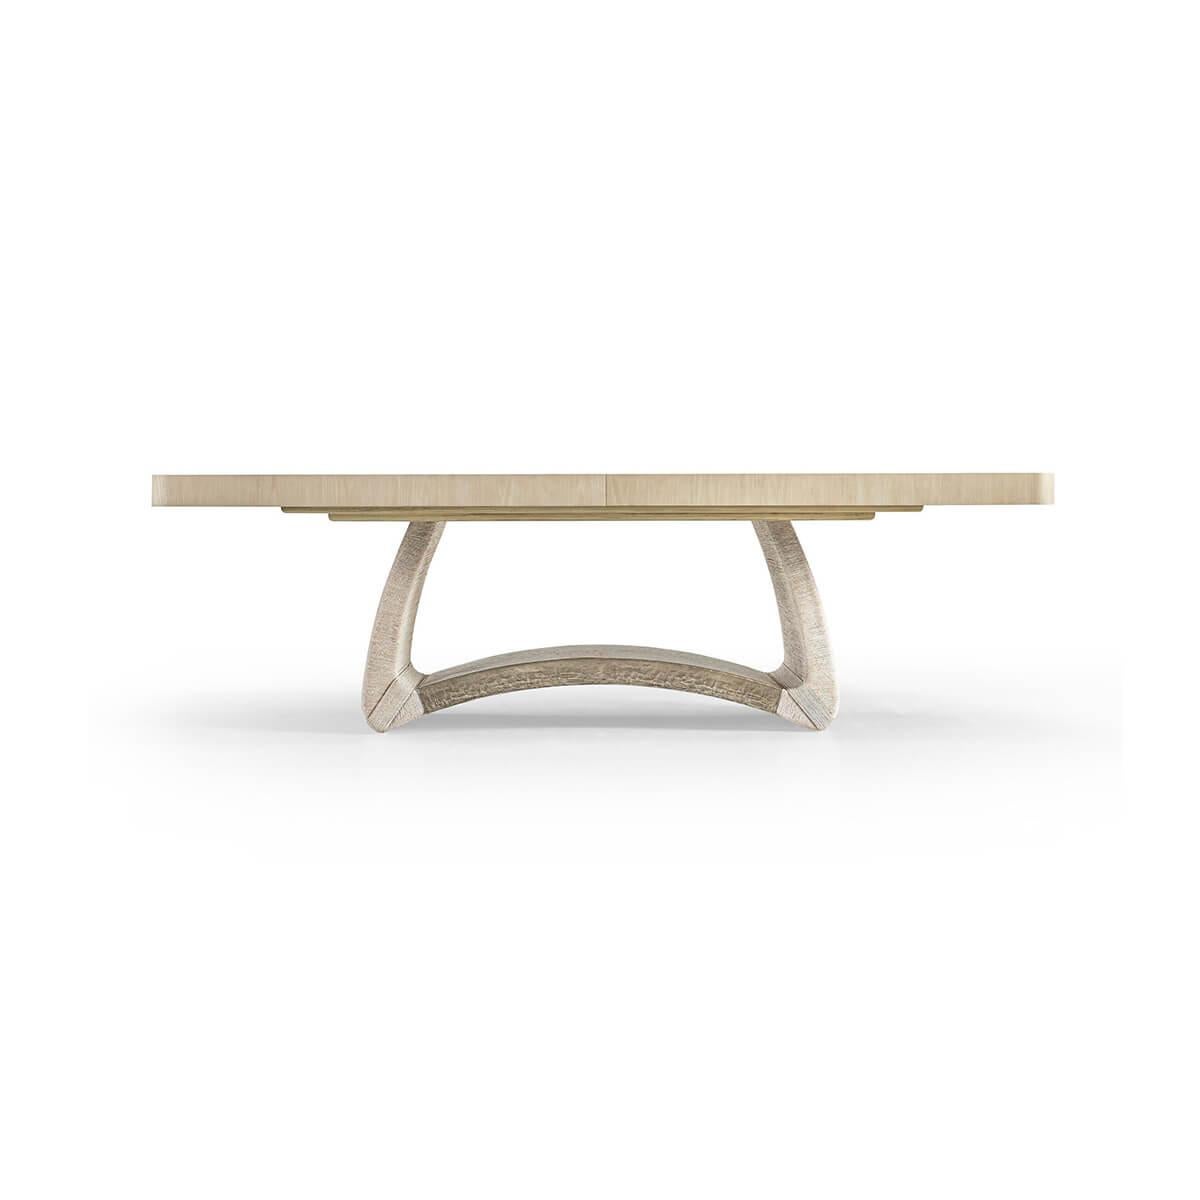 Der vom dänischen Design der 40er und 50er Jahre inspirierte Tisch verfügt über einen geschwungenen Sockel, der mit weiß getünchtem dänischem Cord umwickelt ist. Die Tischplatte aus gebleichter Eiche ist bis zu 120 Zoll lang und verleiht dem Tisch